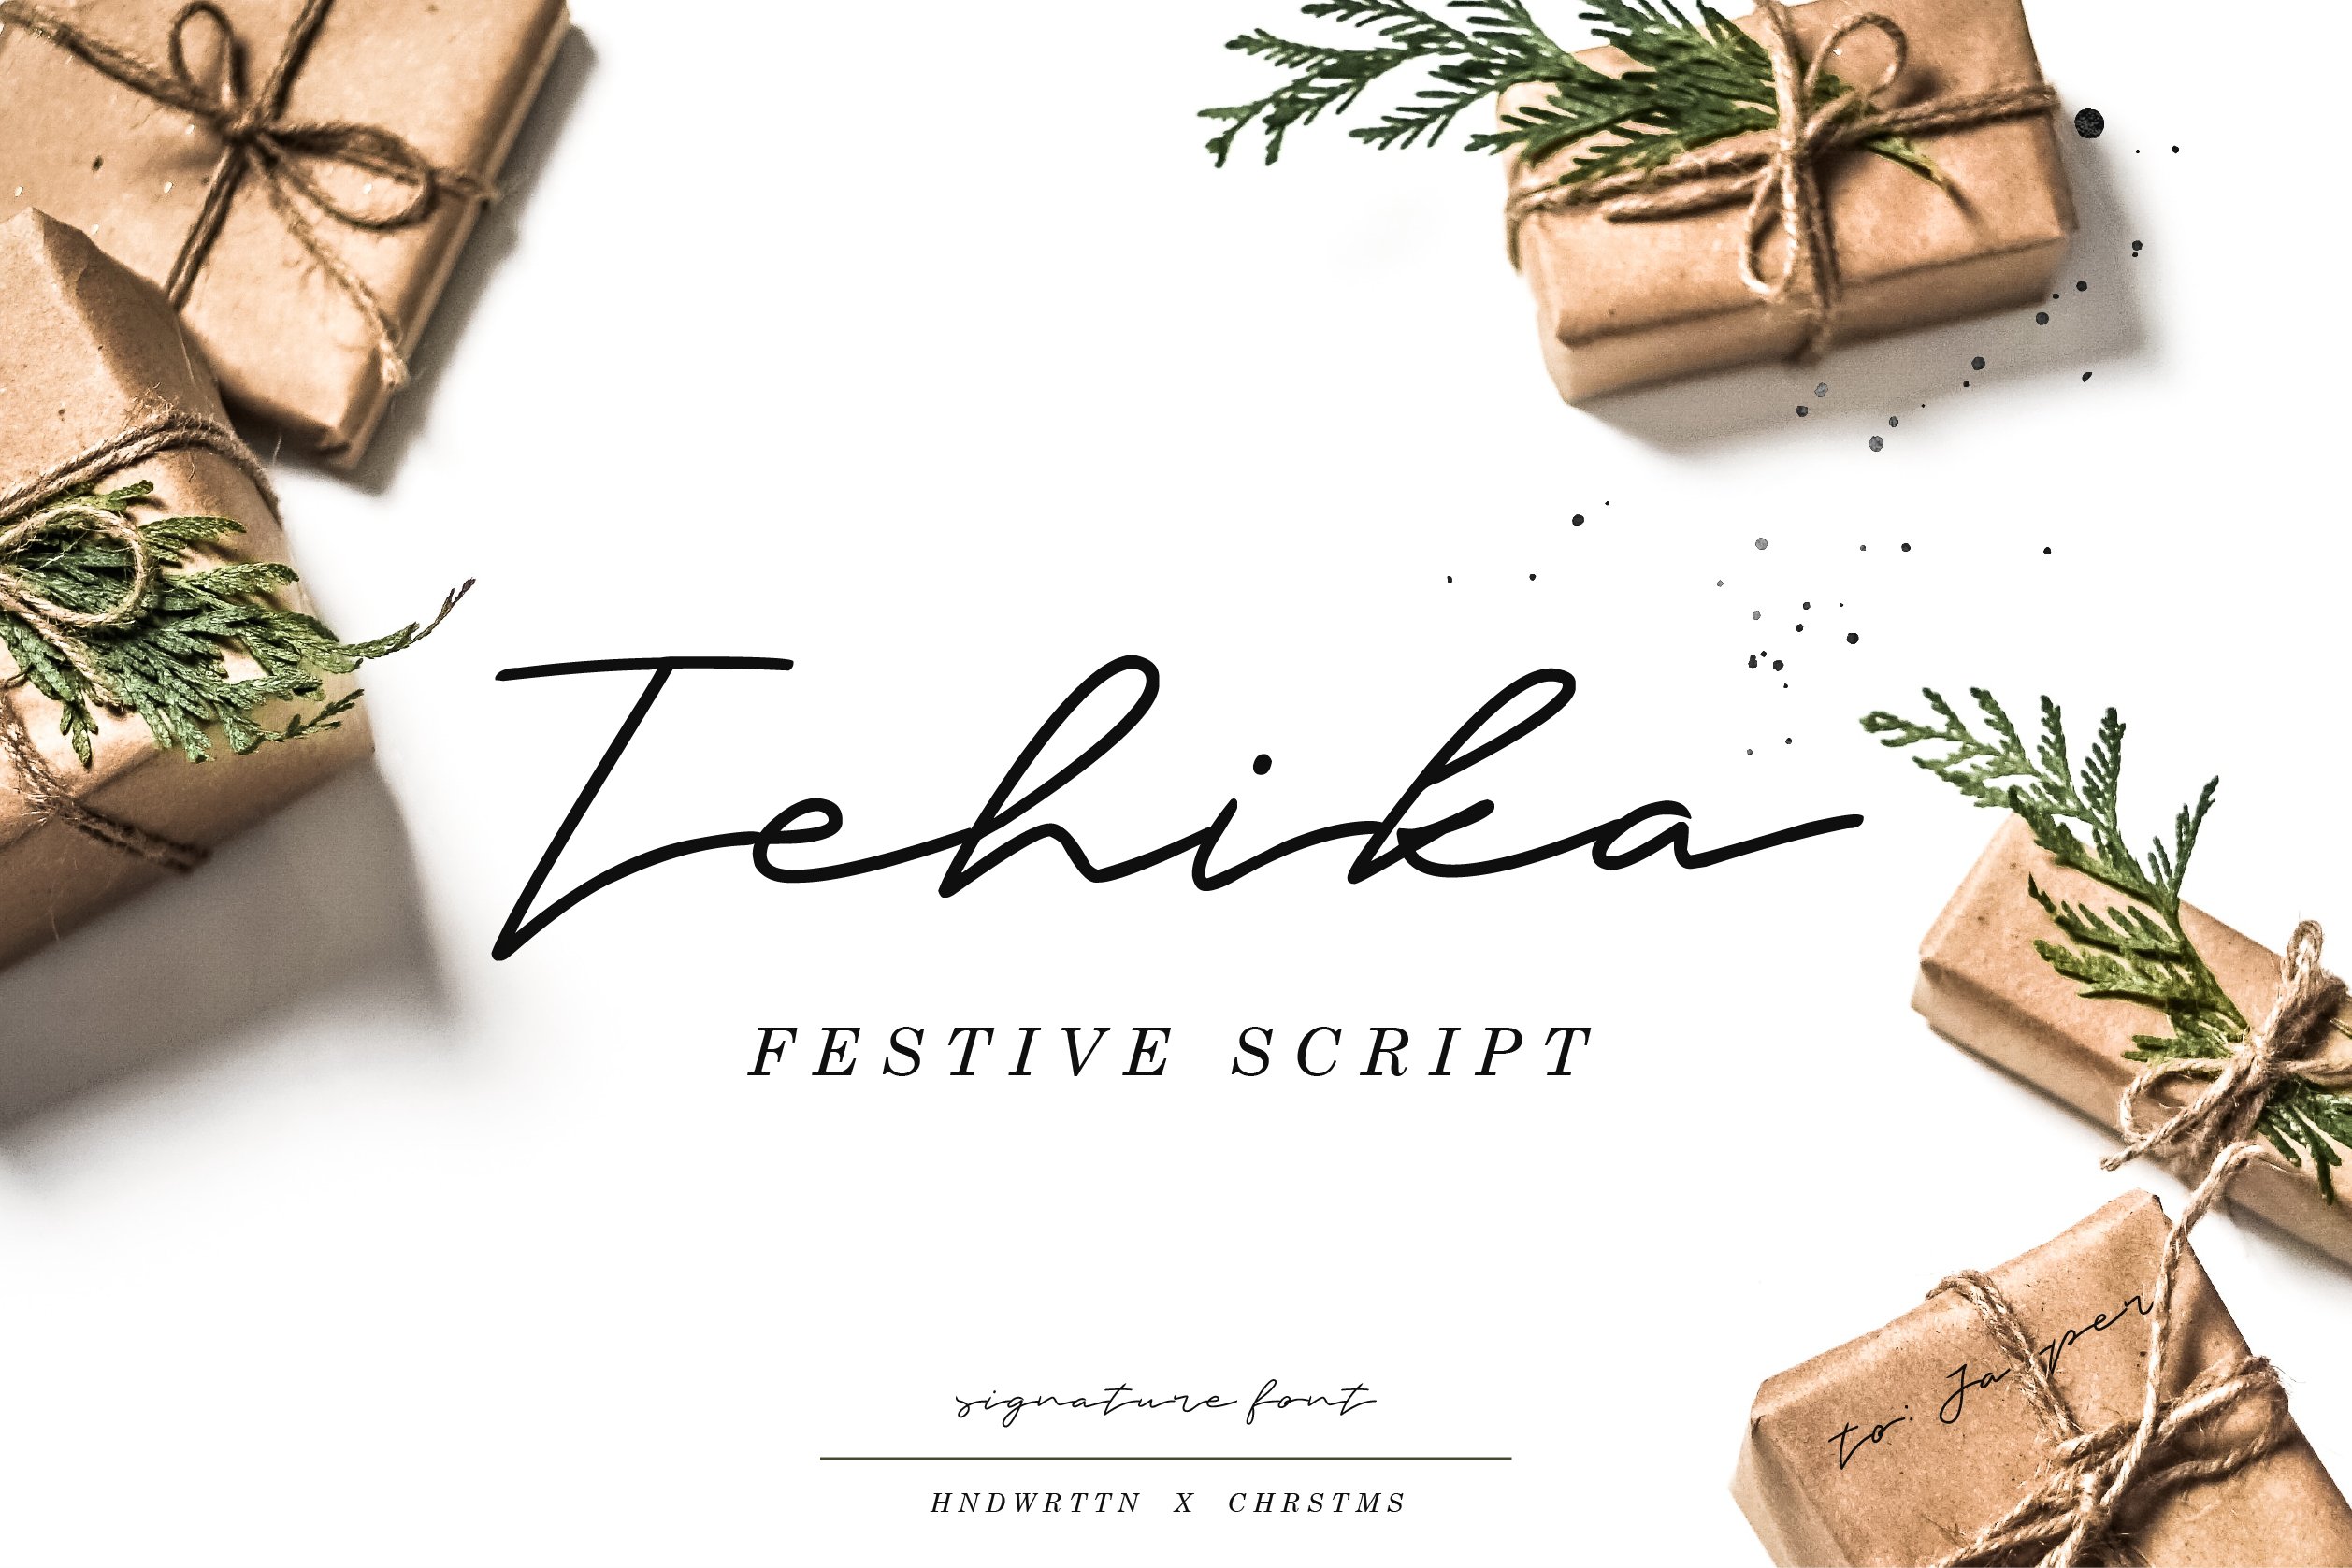 Tehika Script + Bonus cover image.